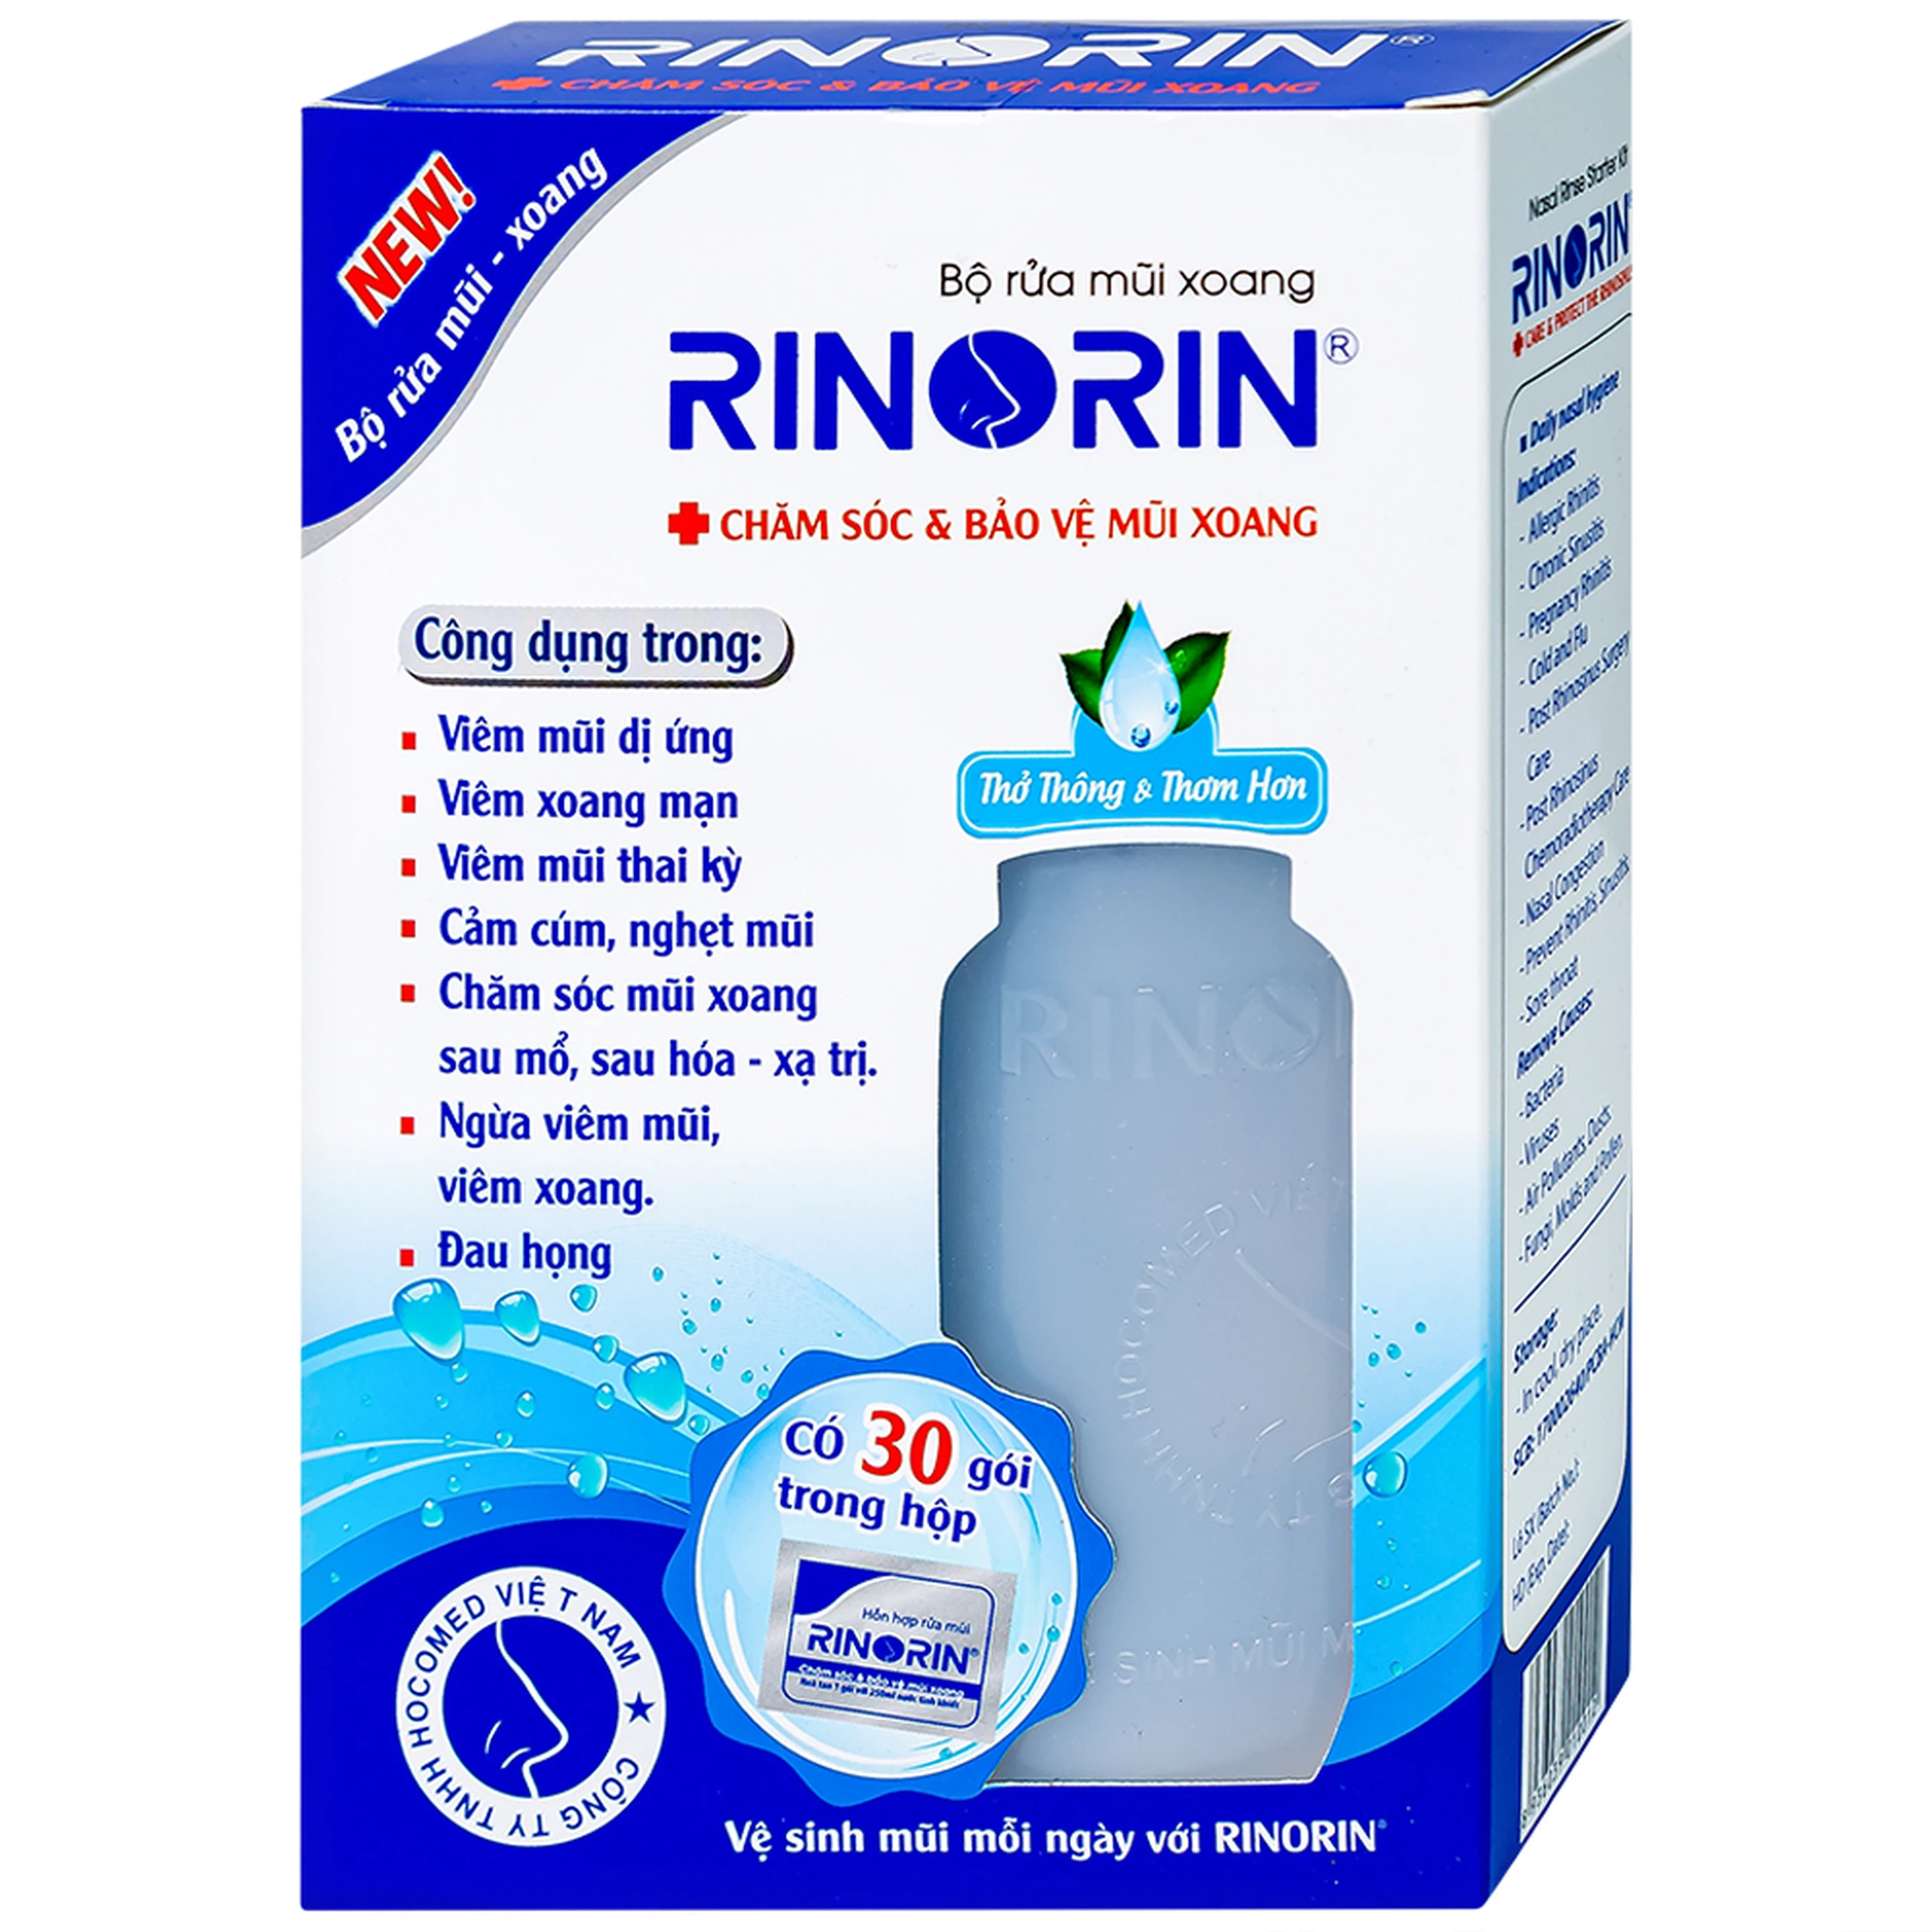 Bộ rửa mũi xoang Rinorin giảm viêm mũi dị ứng, viêm xoang mạn, cảm cúm (1 bình + 30 gói)